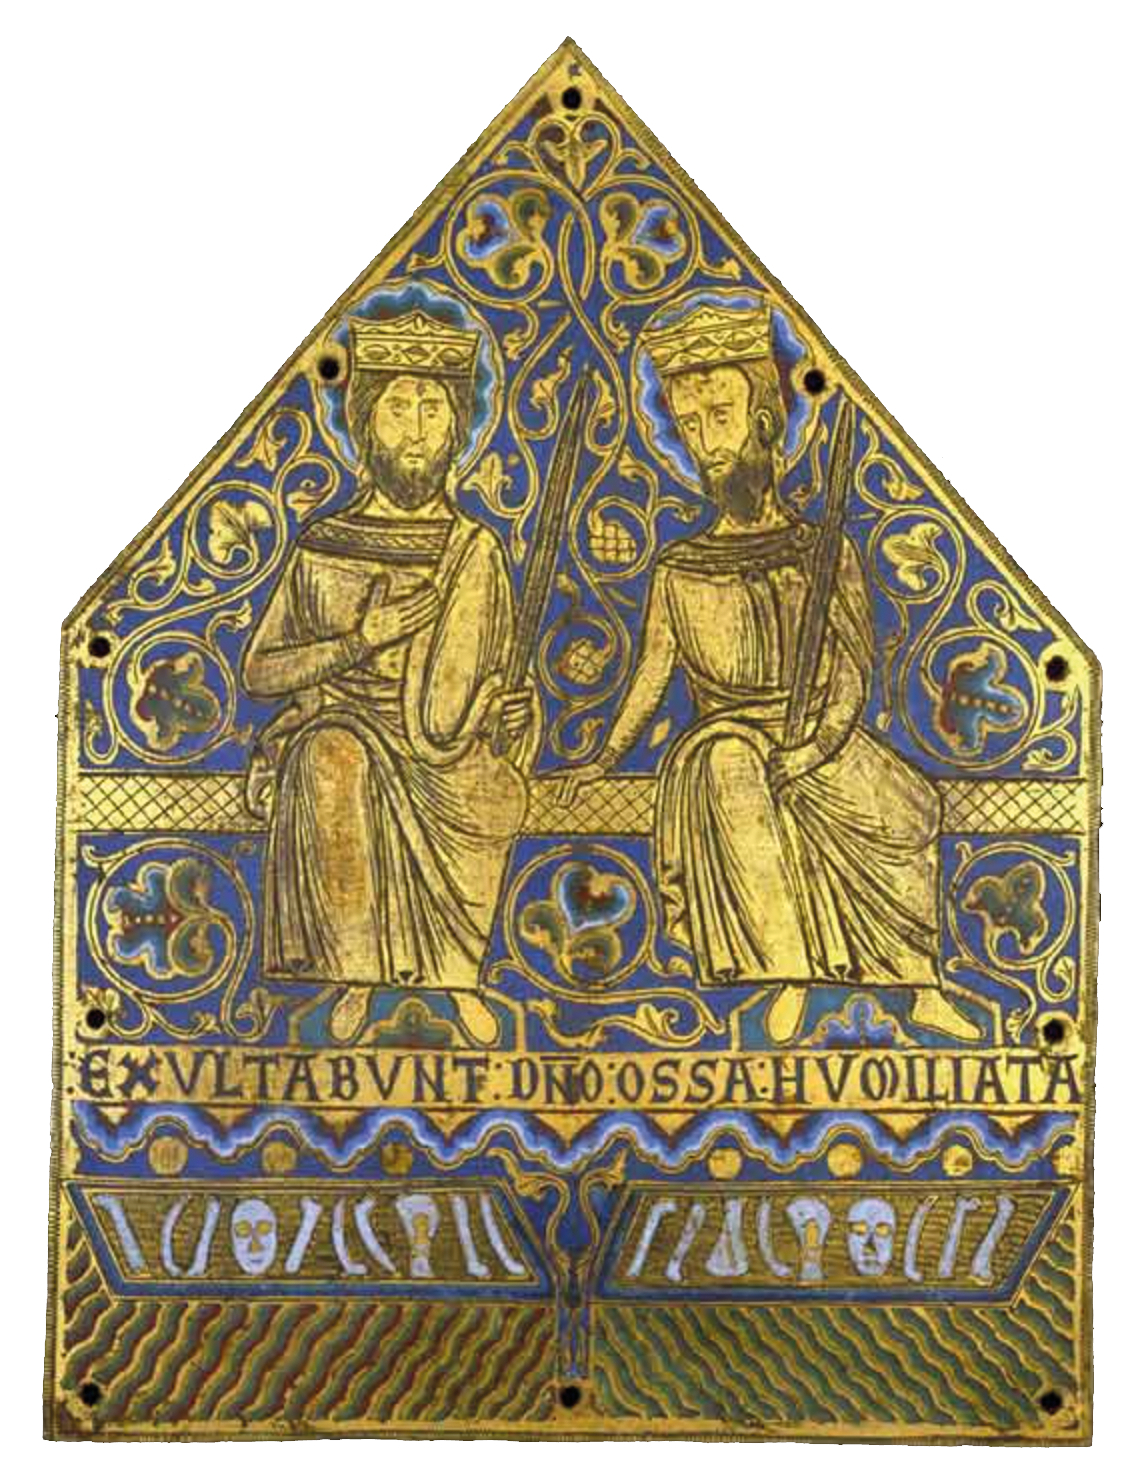 Medieval engraving